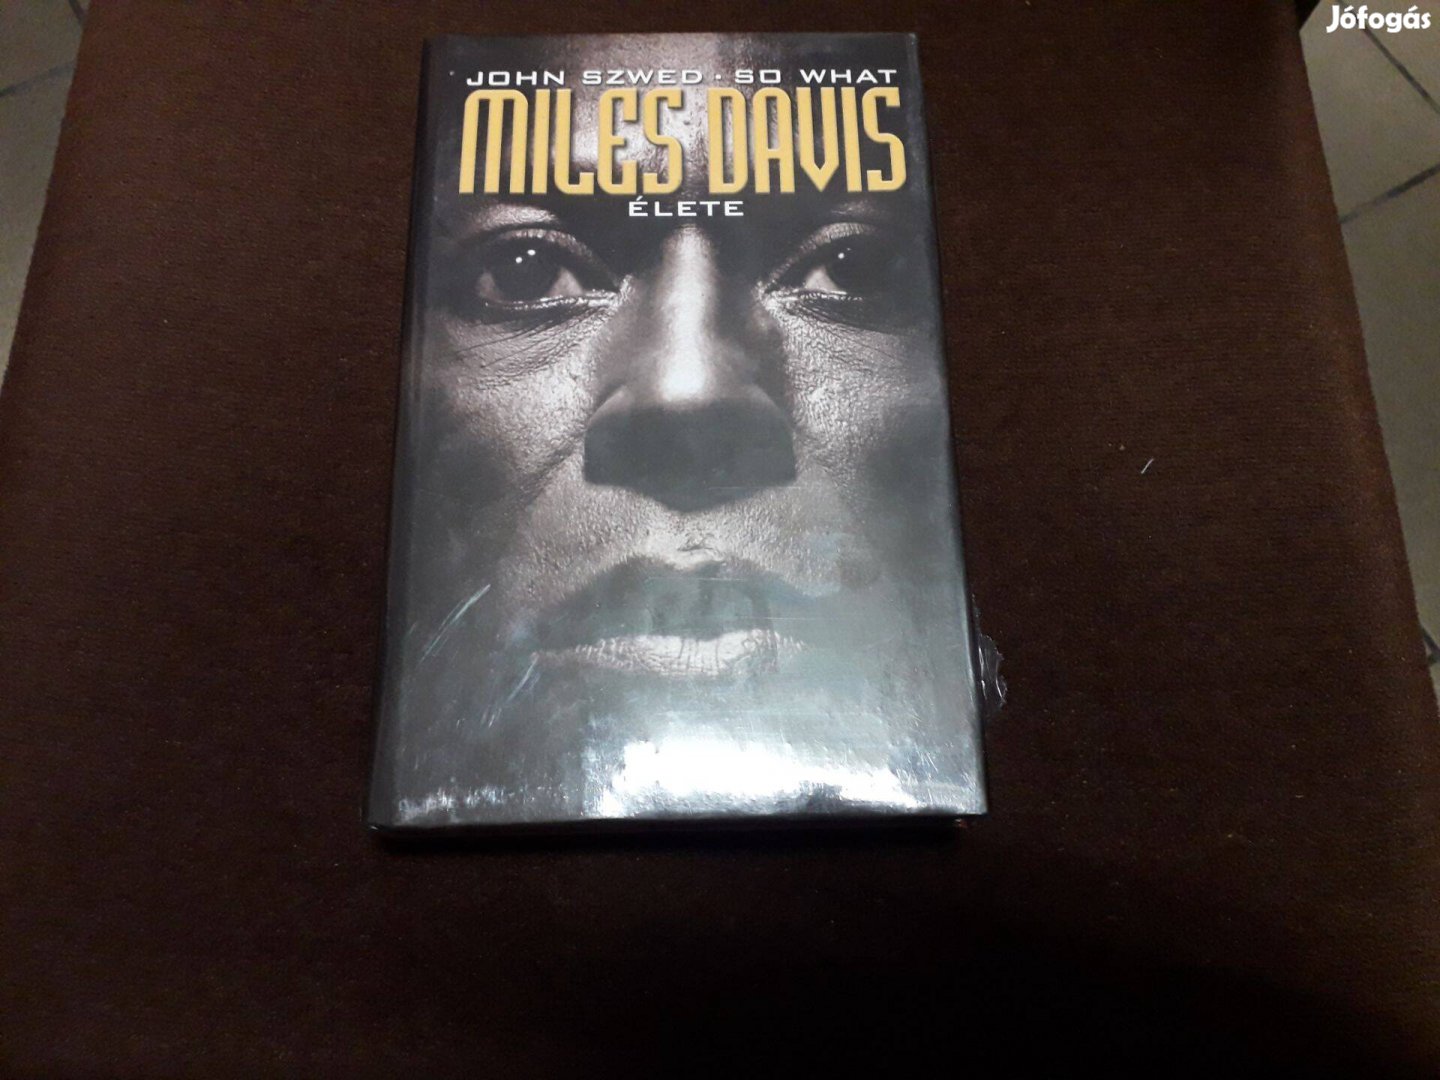 John Szwed - Miles Davis élete